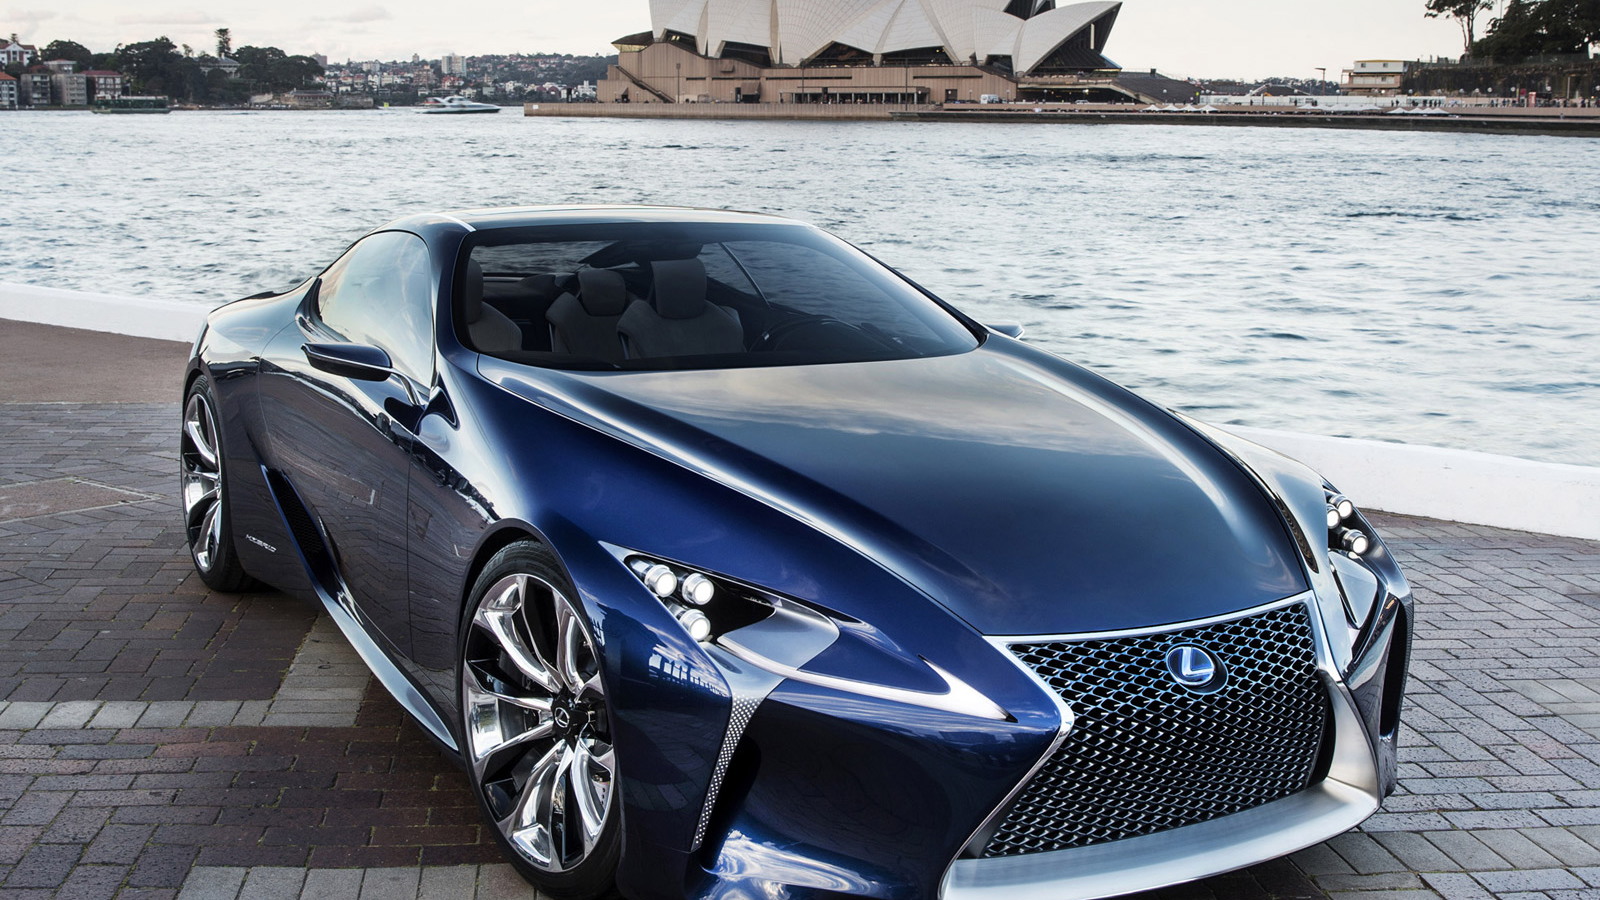 2012 Lexus LF LC Blue Concept